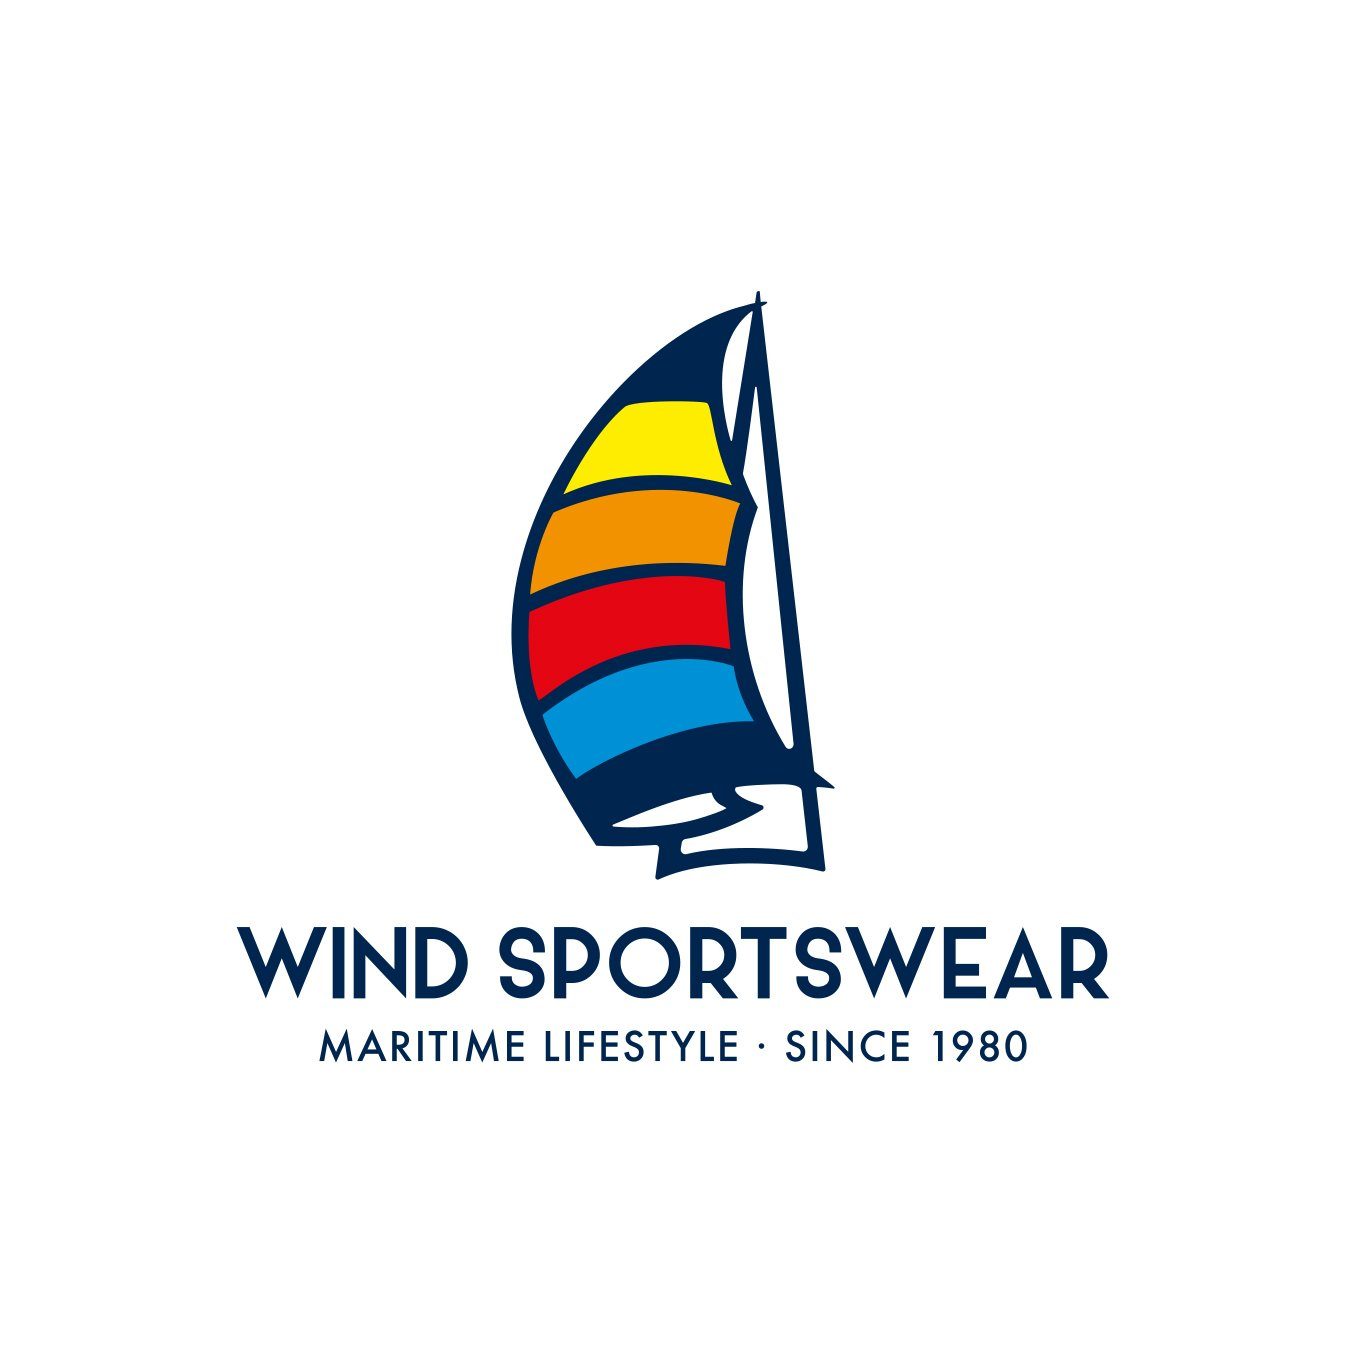 Wind sportswear